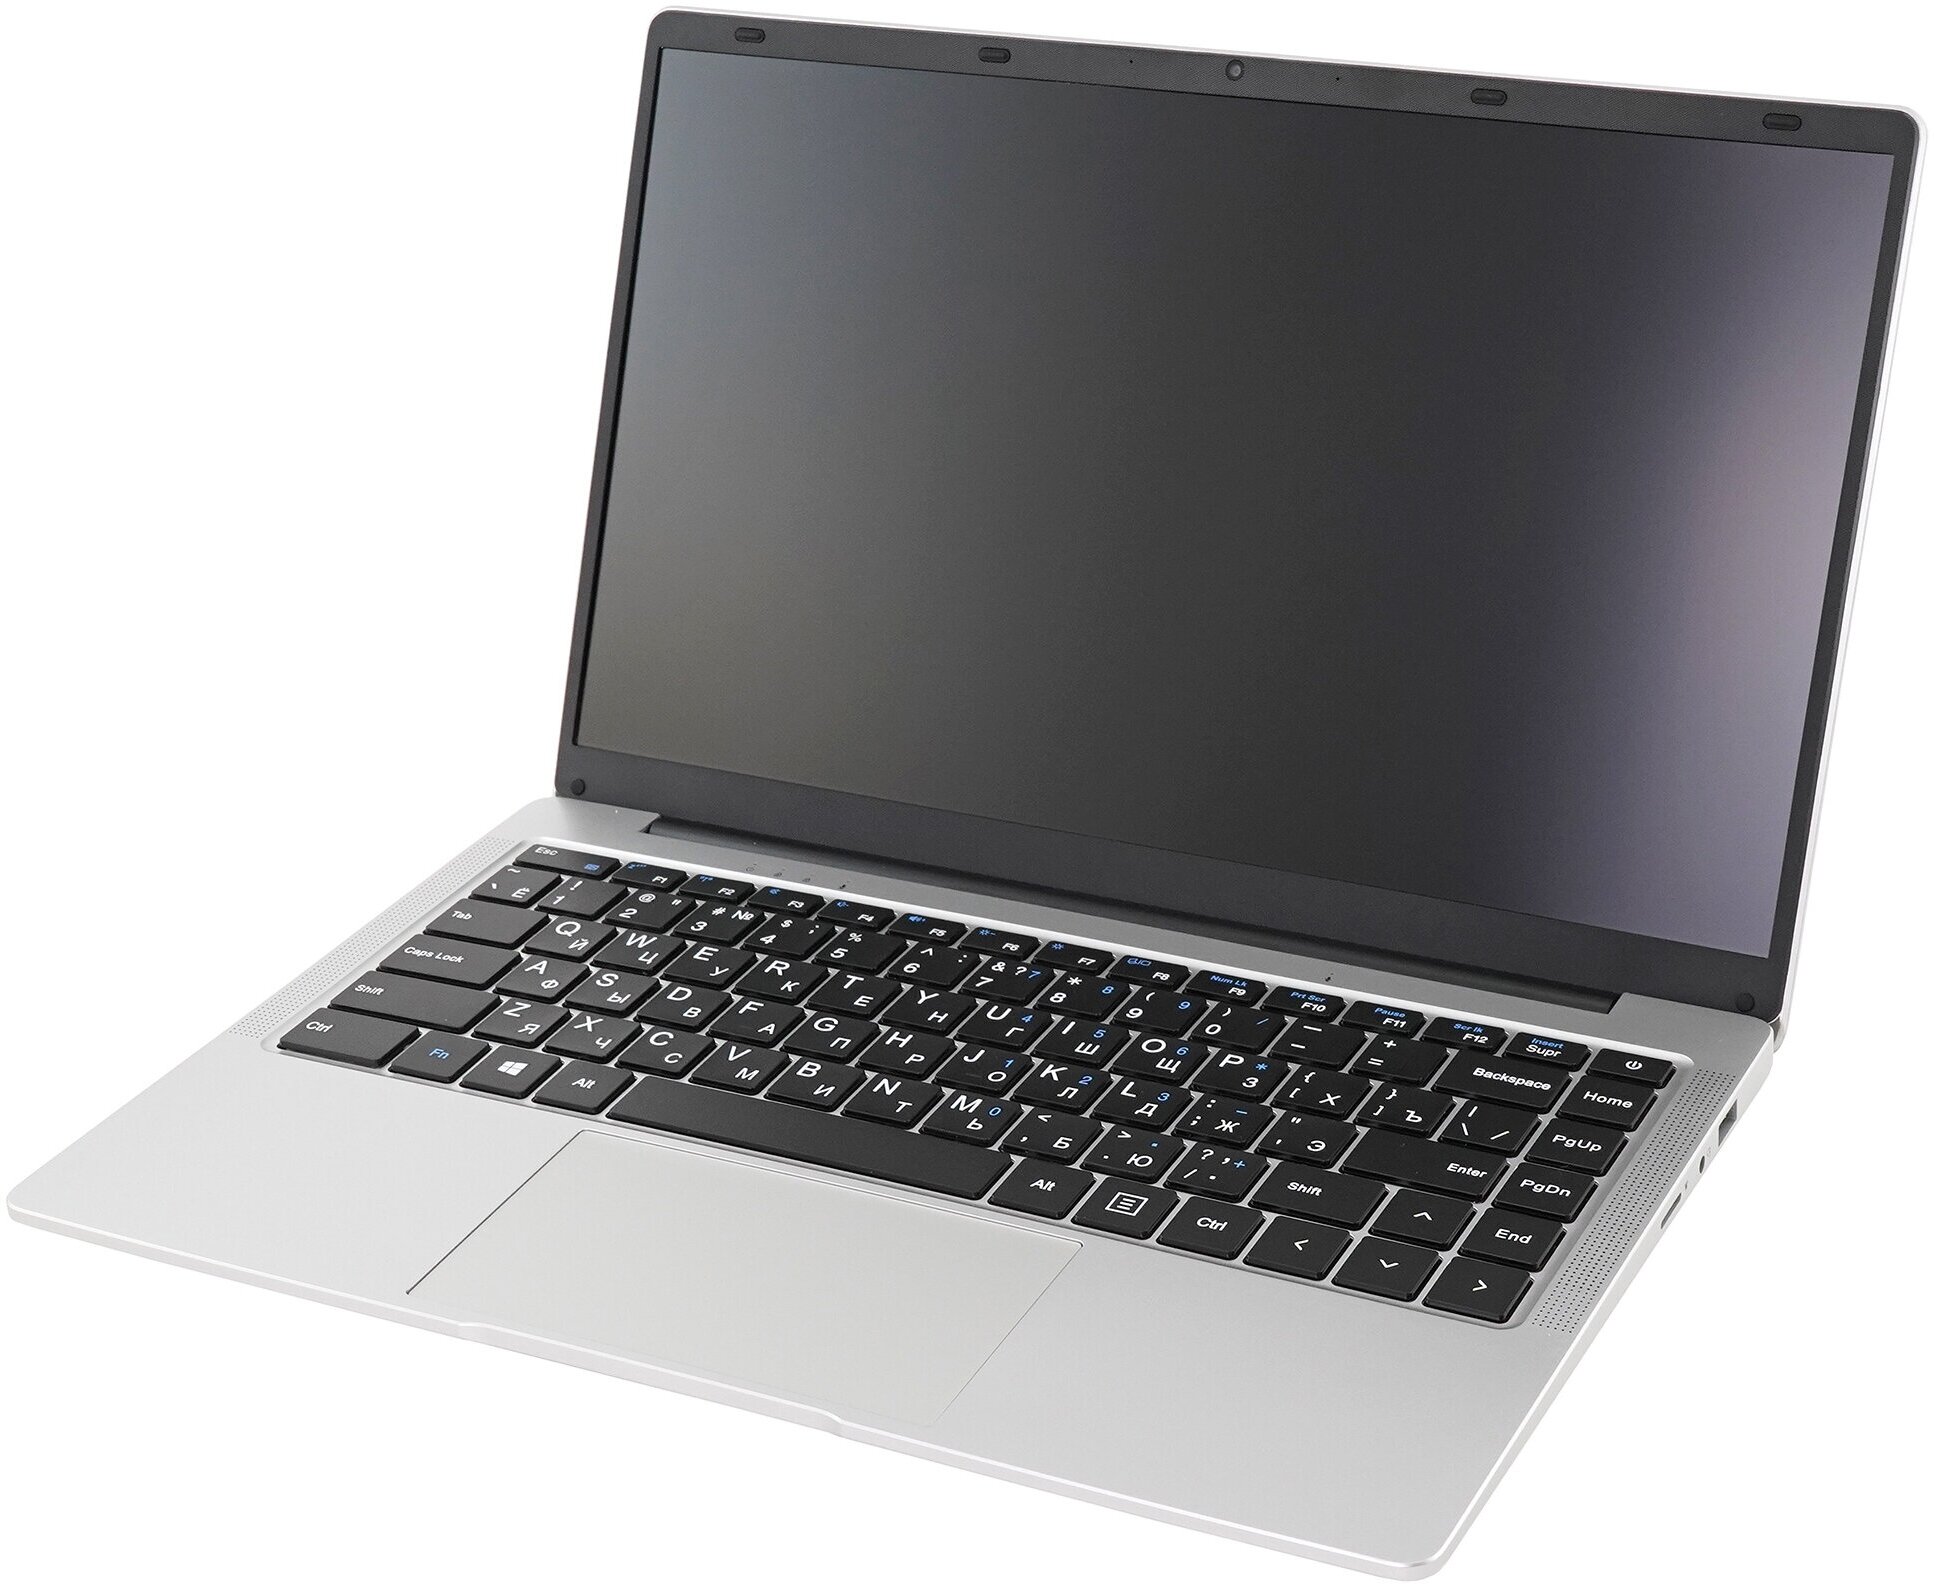 Ноутбук Azerty RB-1450 14' (Intel J4105 1.5GHz, 6Gb, 512Gb SSD)